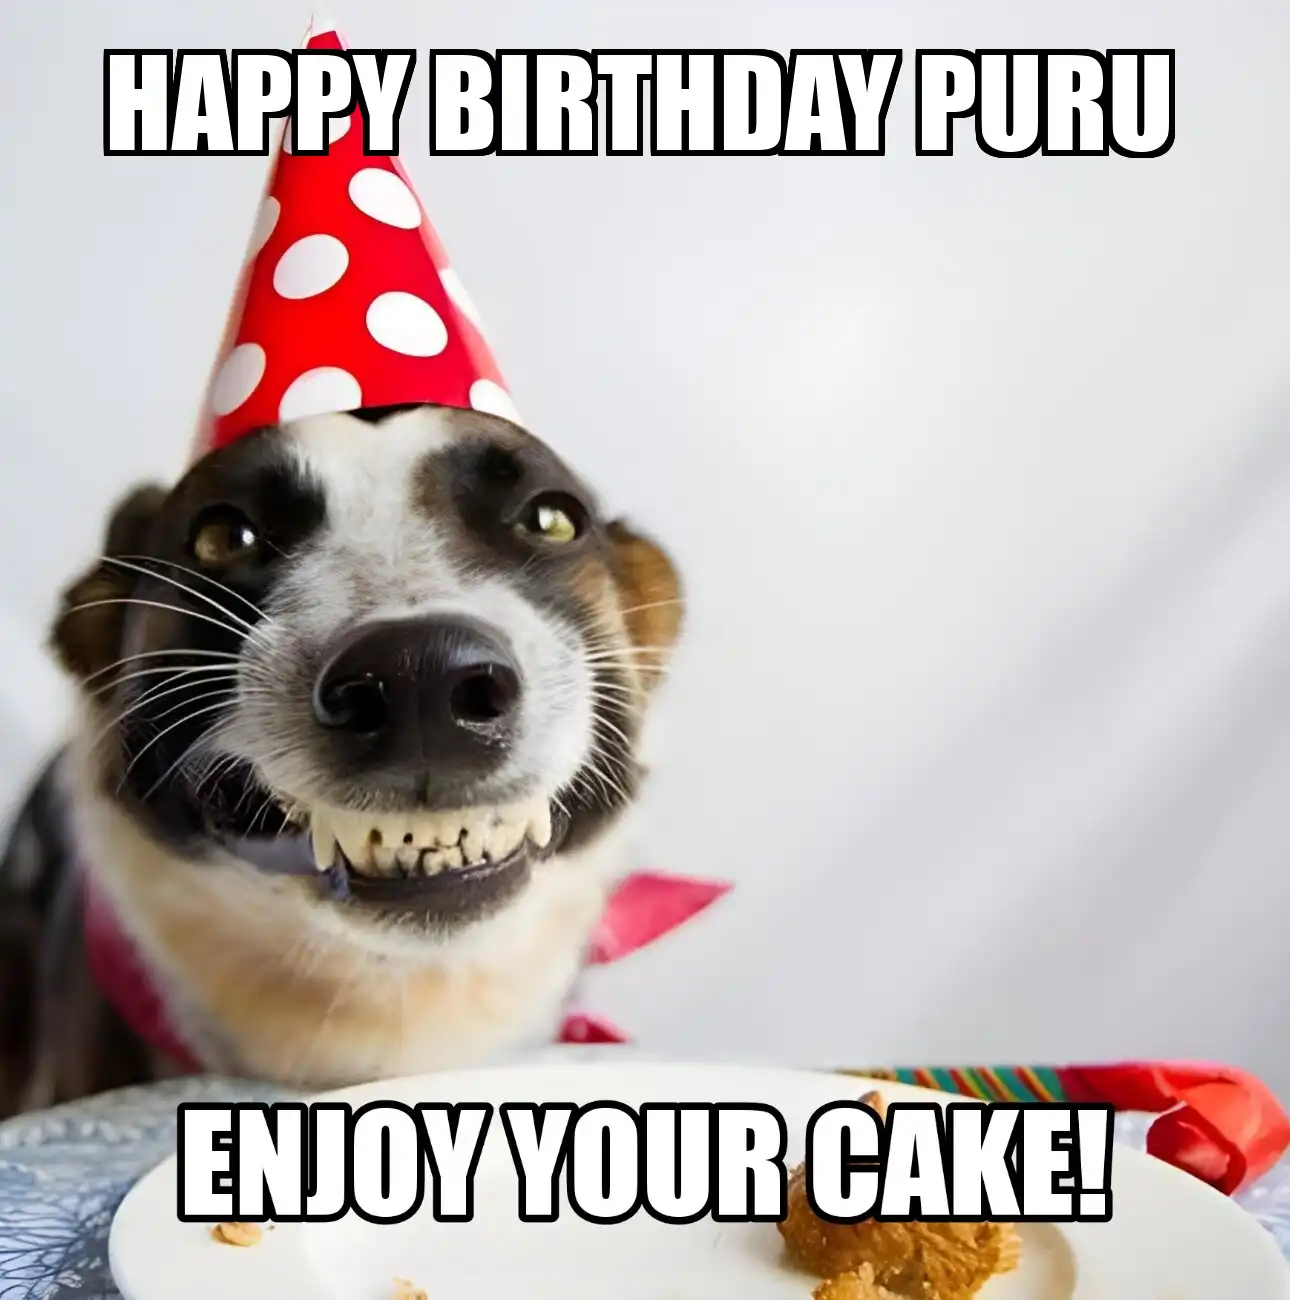 Happy Birthday Puru Enjoy Your Cake Dog Meme